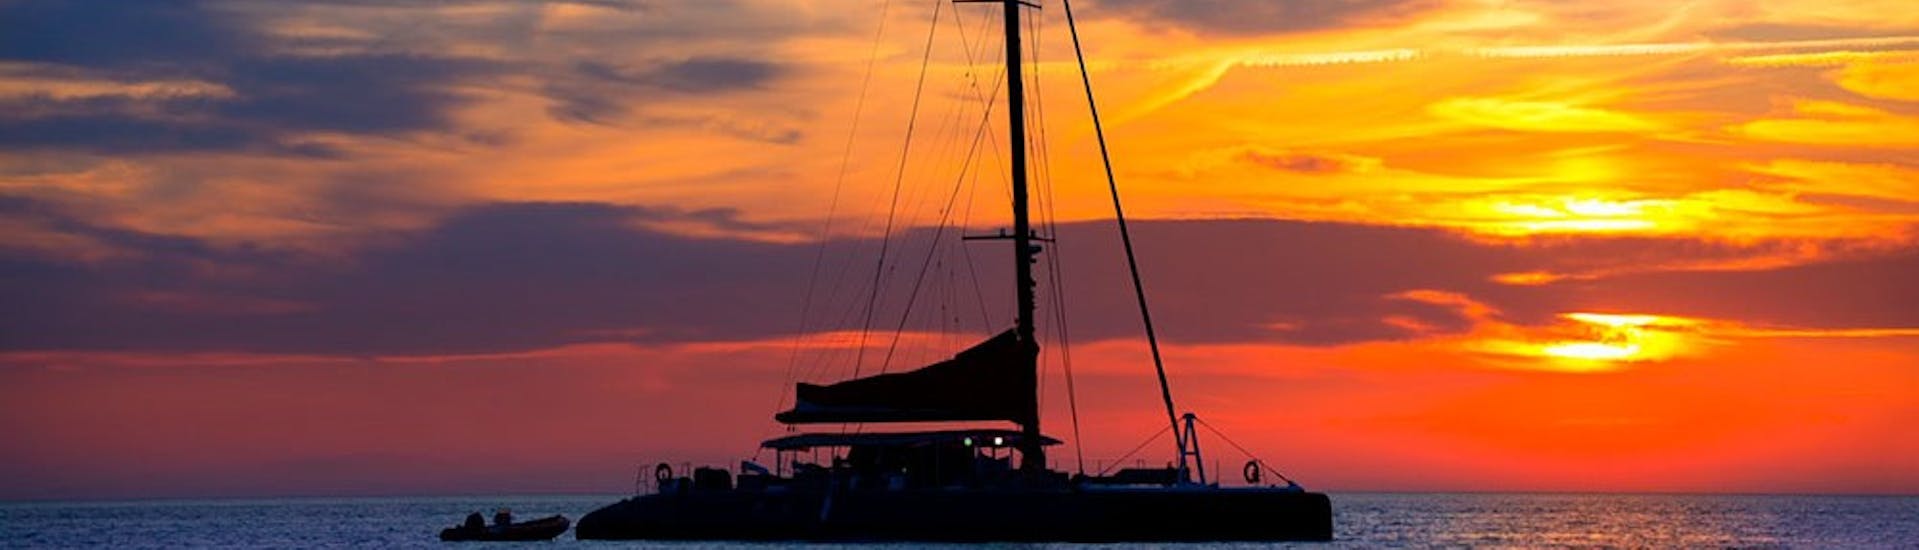 Een prachtige zonsondergang tijdens de boottocht bij zonsondergang, georganiseerd door Malta Explorers.